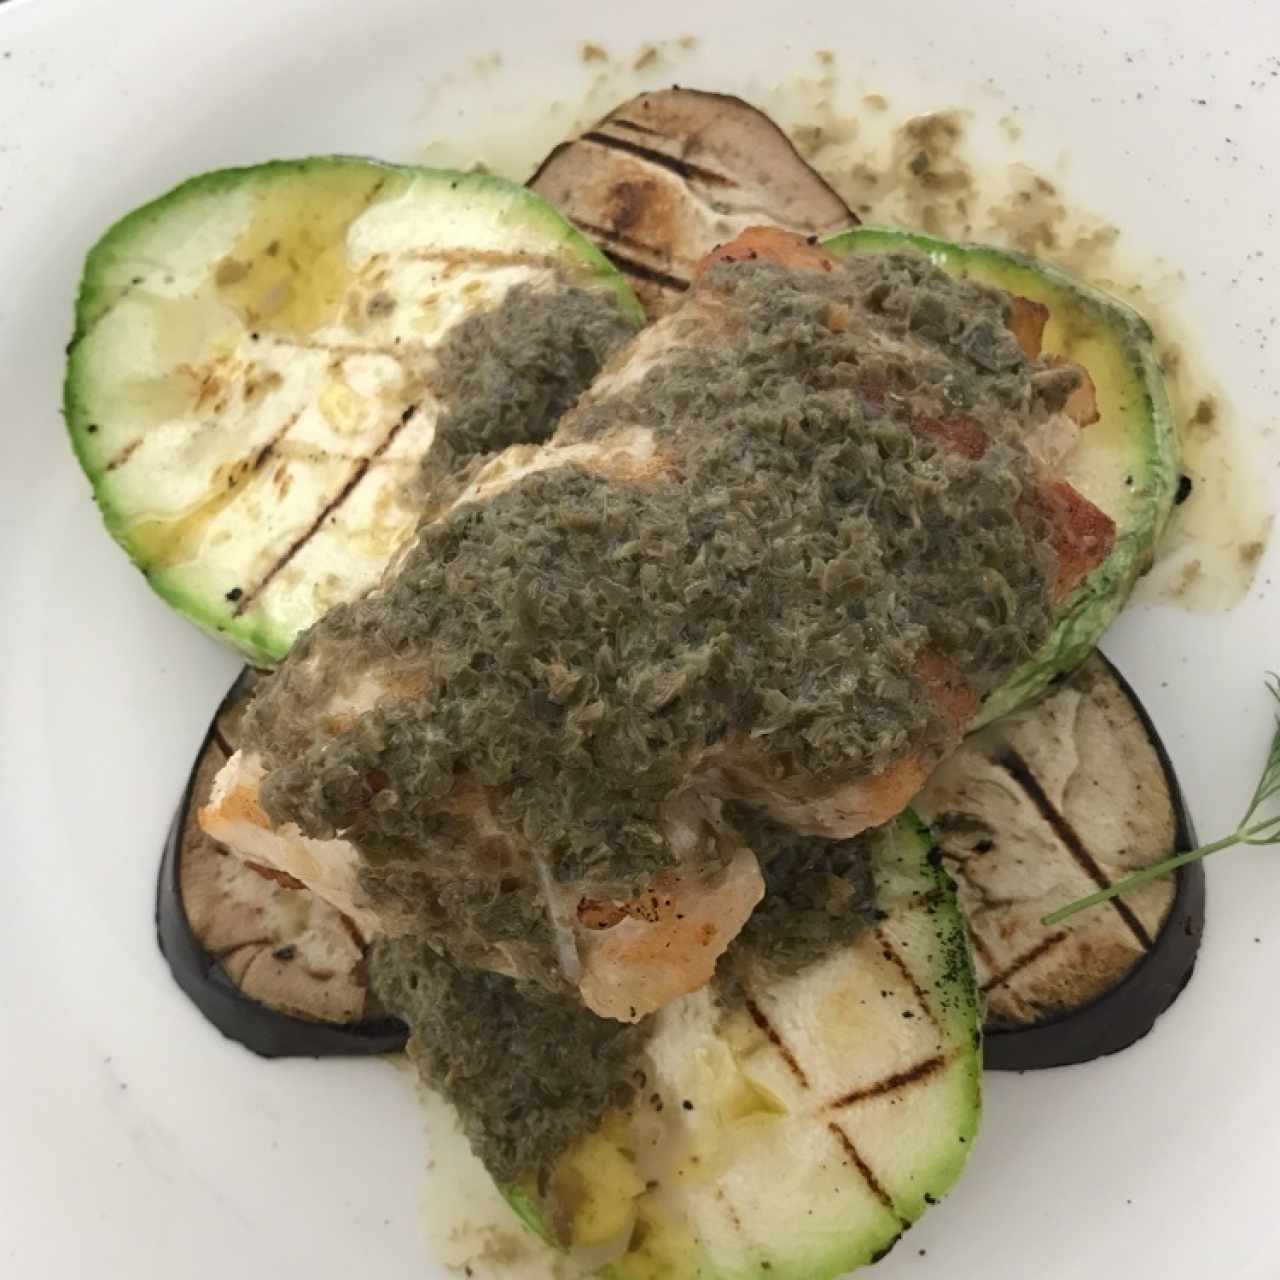 pescado del dia con salsa de alcaparras y vegetales al grill